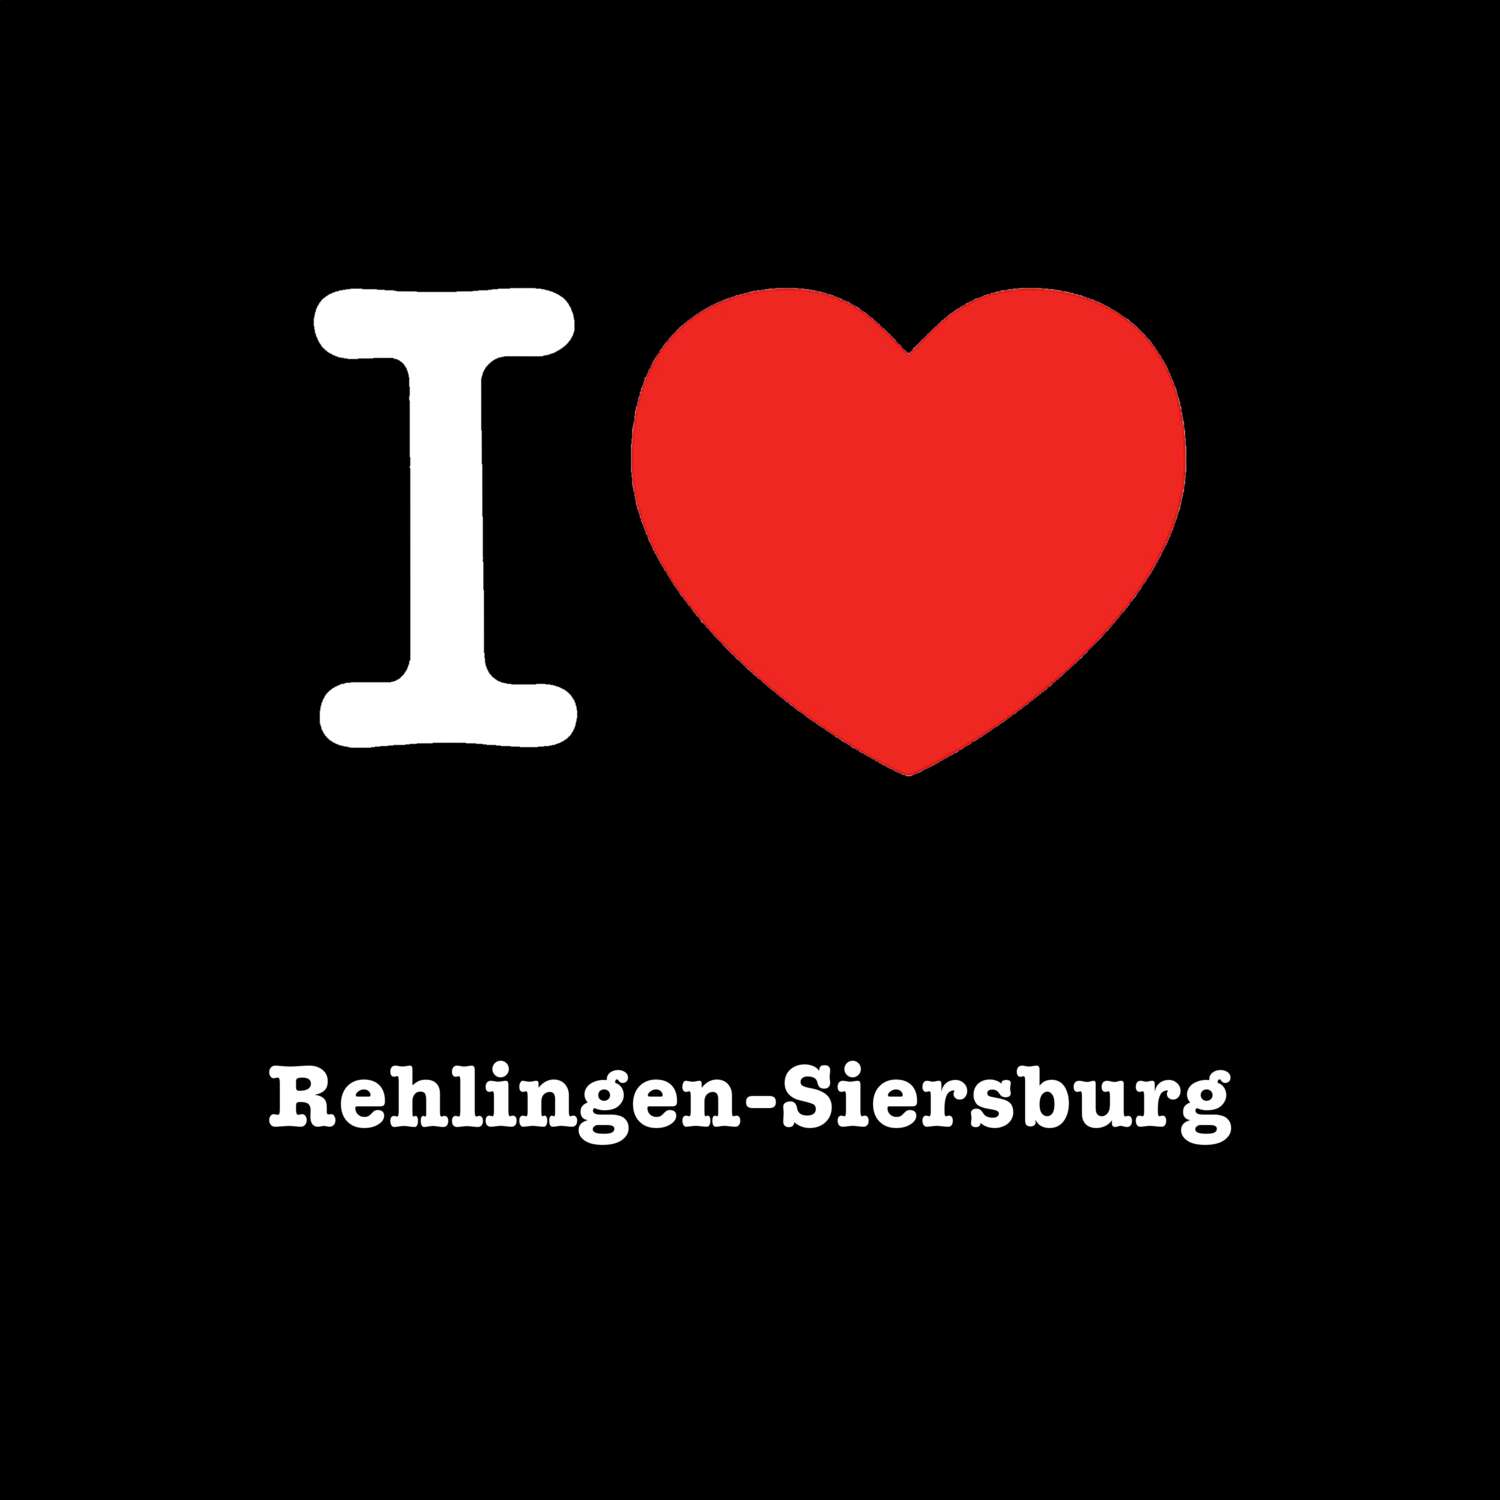 Rehlingen-Siersburg T-Shirt »I love«